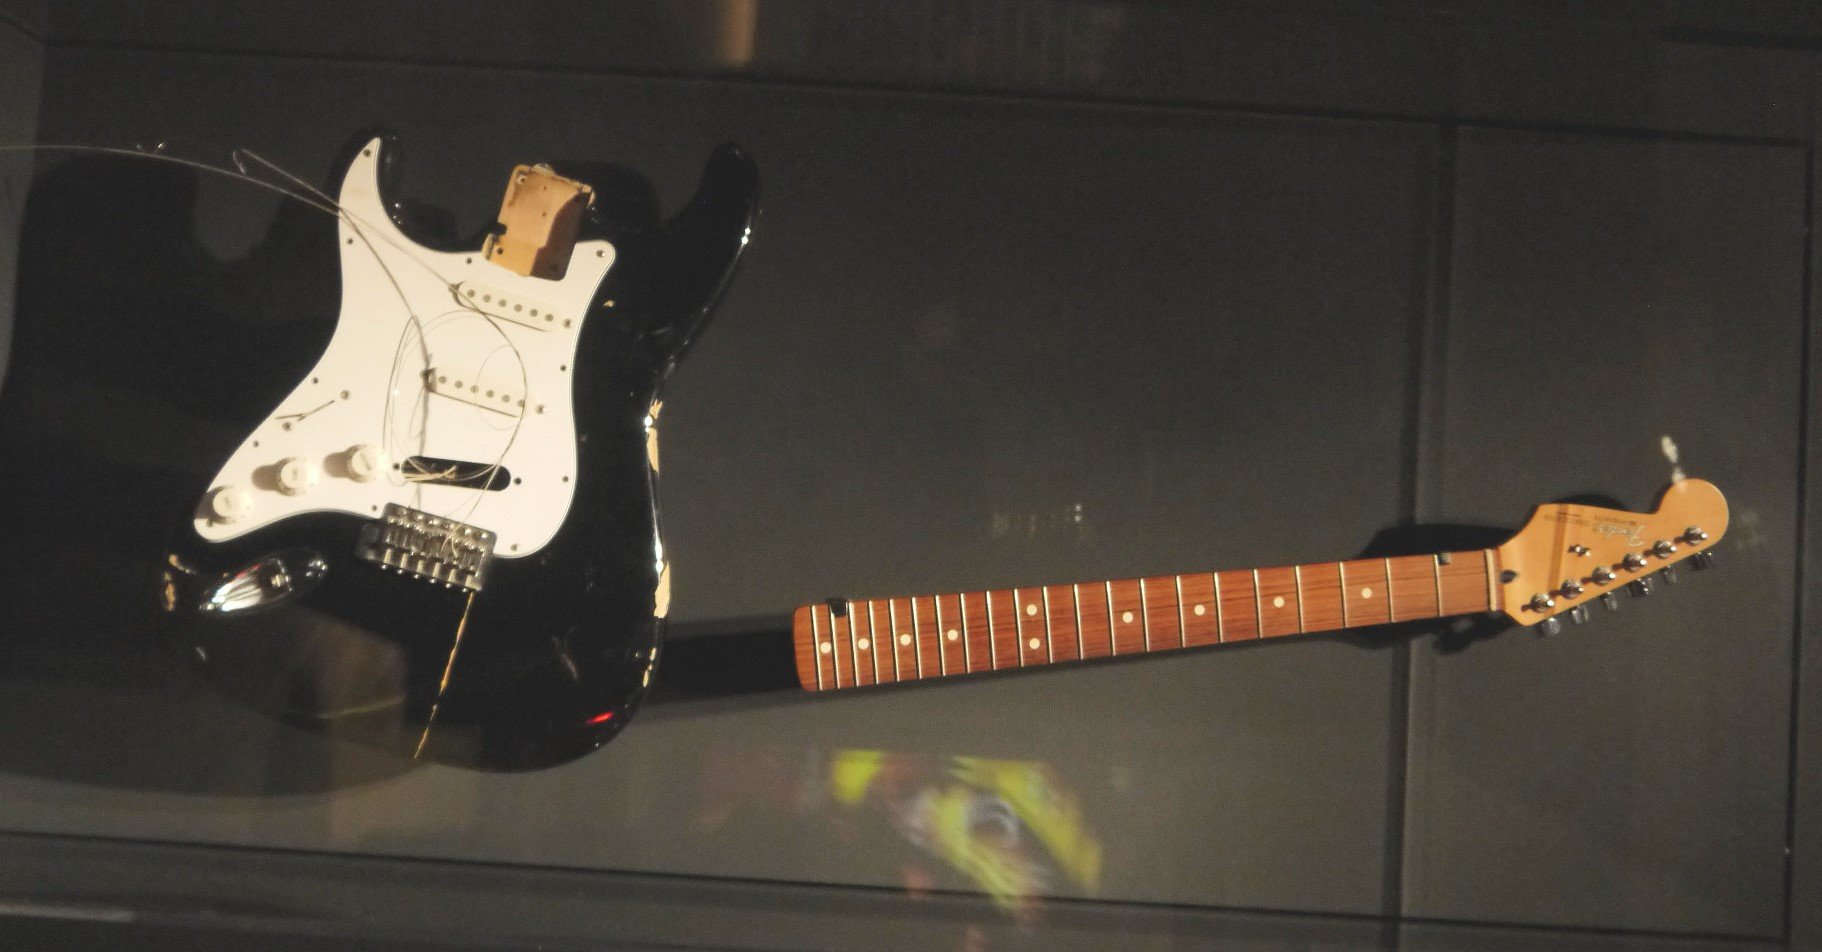 Kurt Cobain's smashed guitar